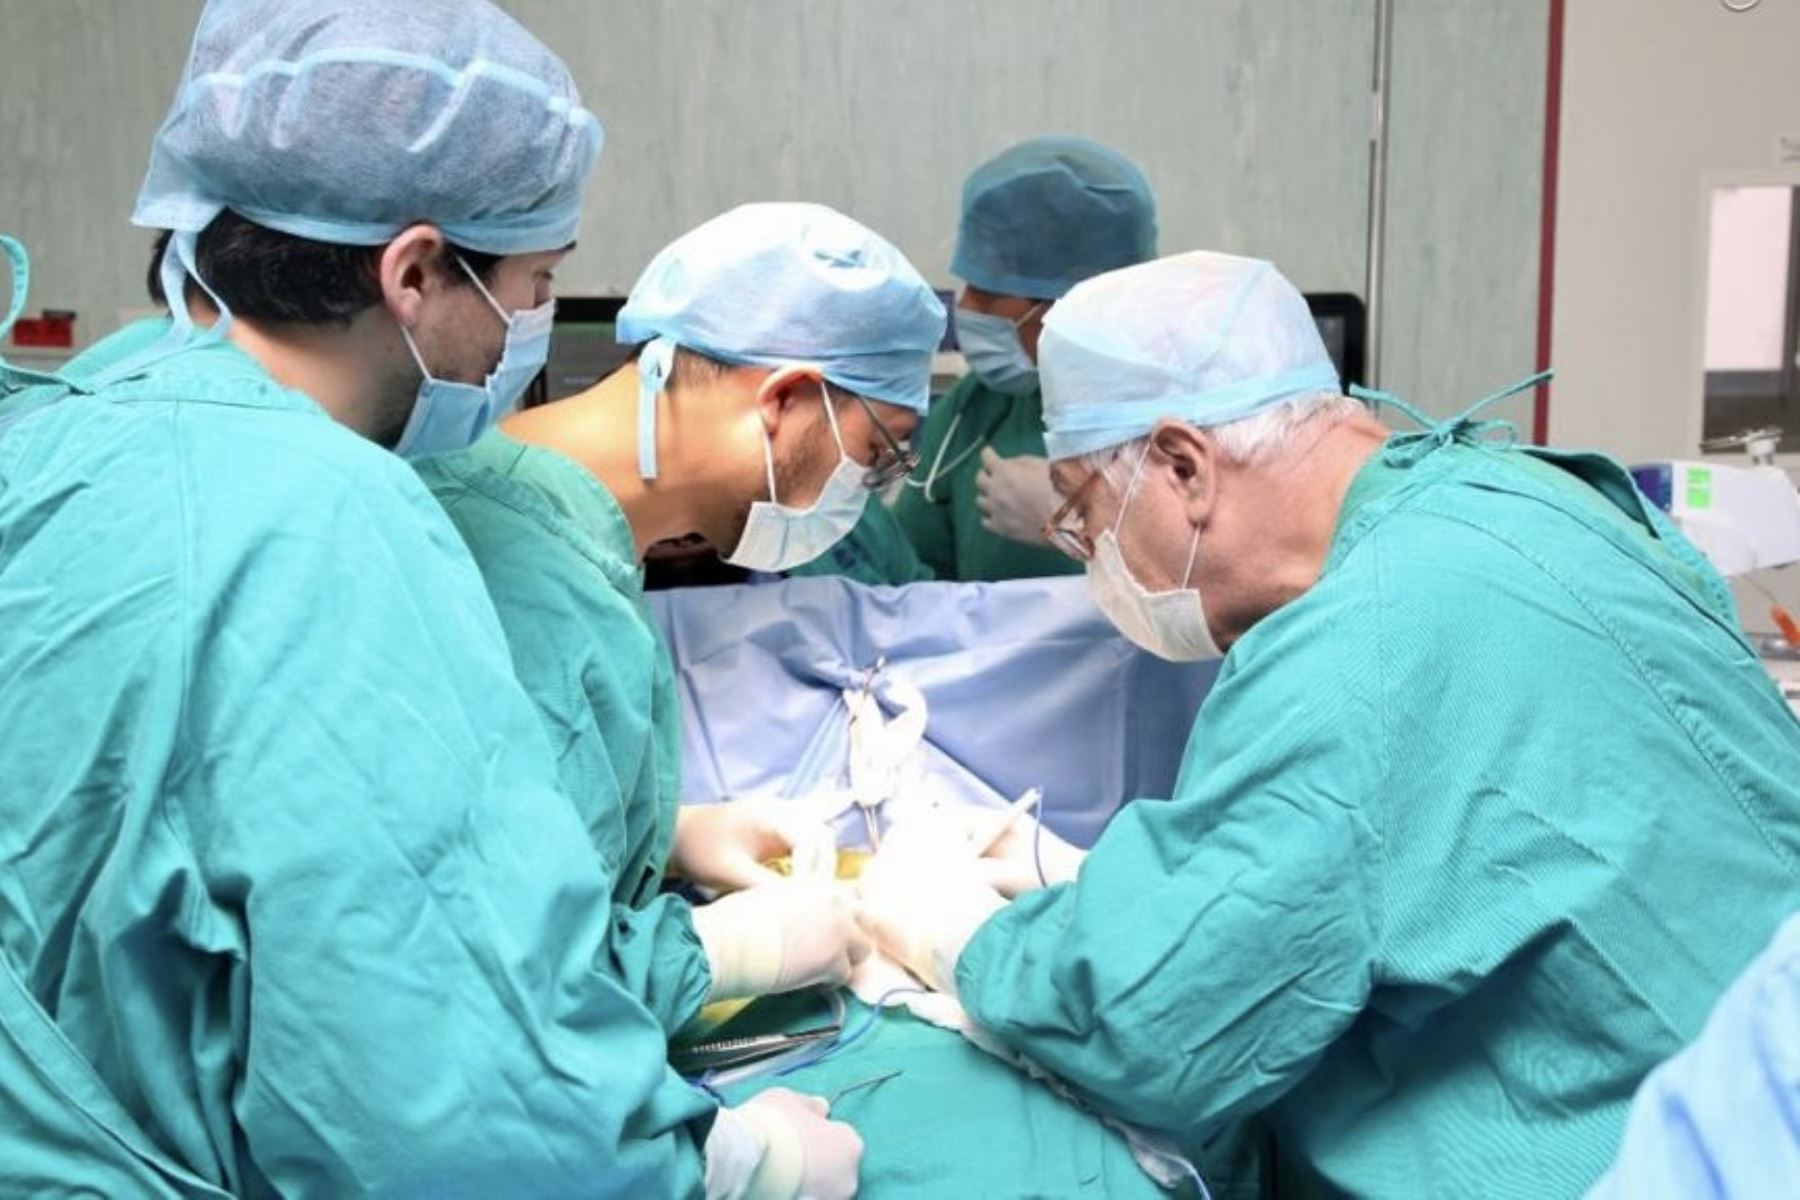 La cirugía se realizó mediante un pequeño corte entre las costillas para llegar al corazón y reparar el conducto abierto con puntos o ligaduras. ANDINA/ INSN- San Borja.